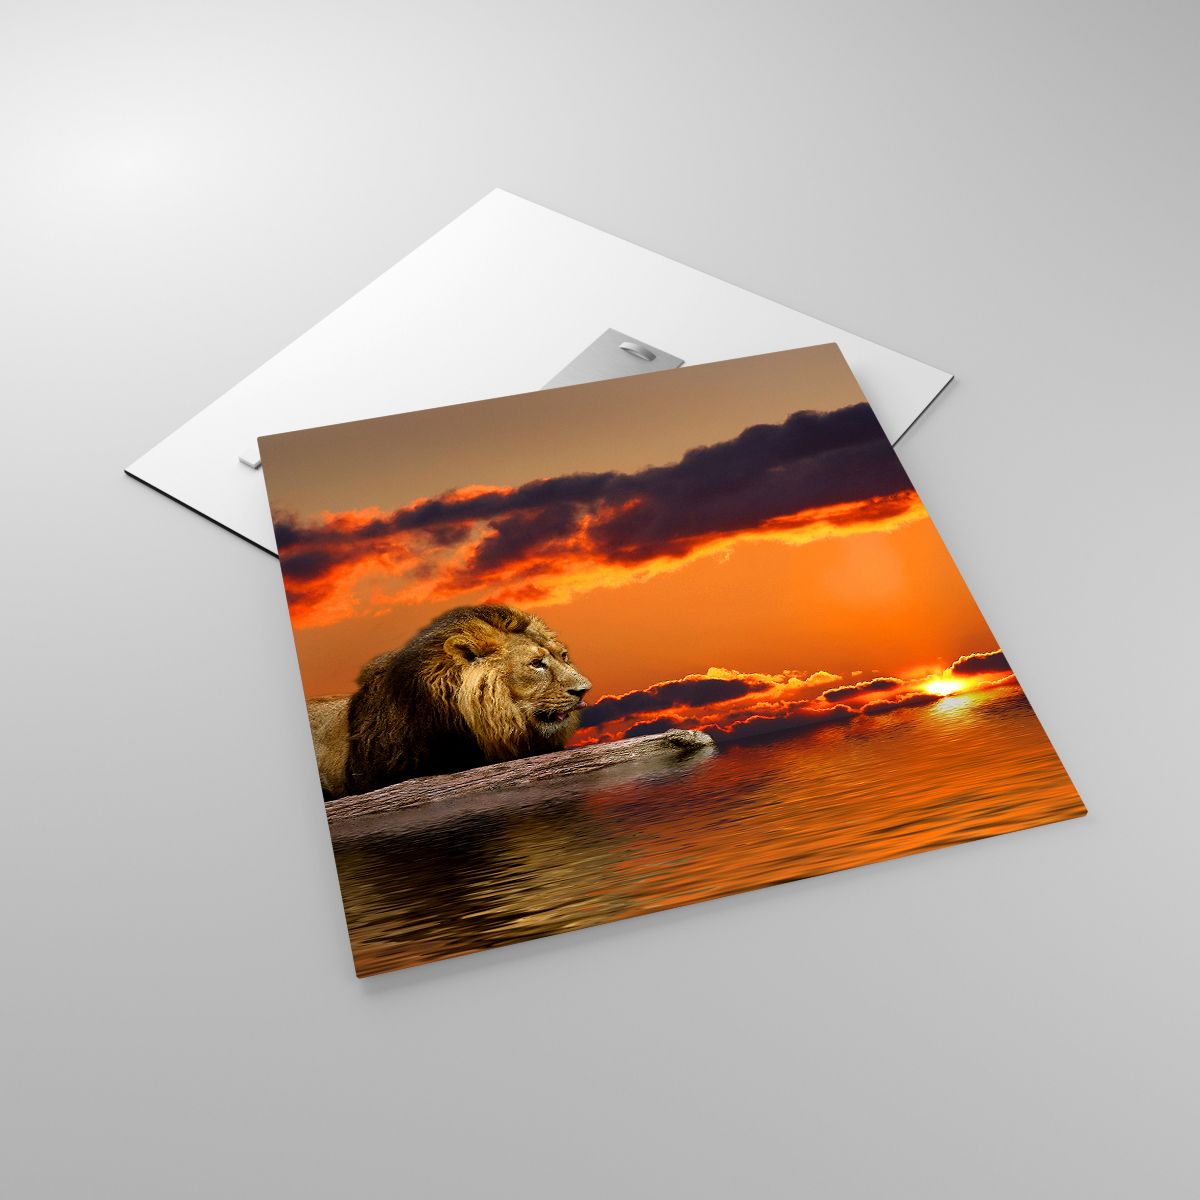 Glasbild Löwe, Glasbild Der Sonnenuntergang, Glasbild Tiere, Glasbild Landschaft, Glasbild Afrika